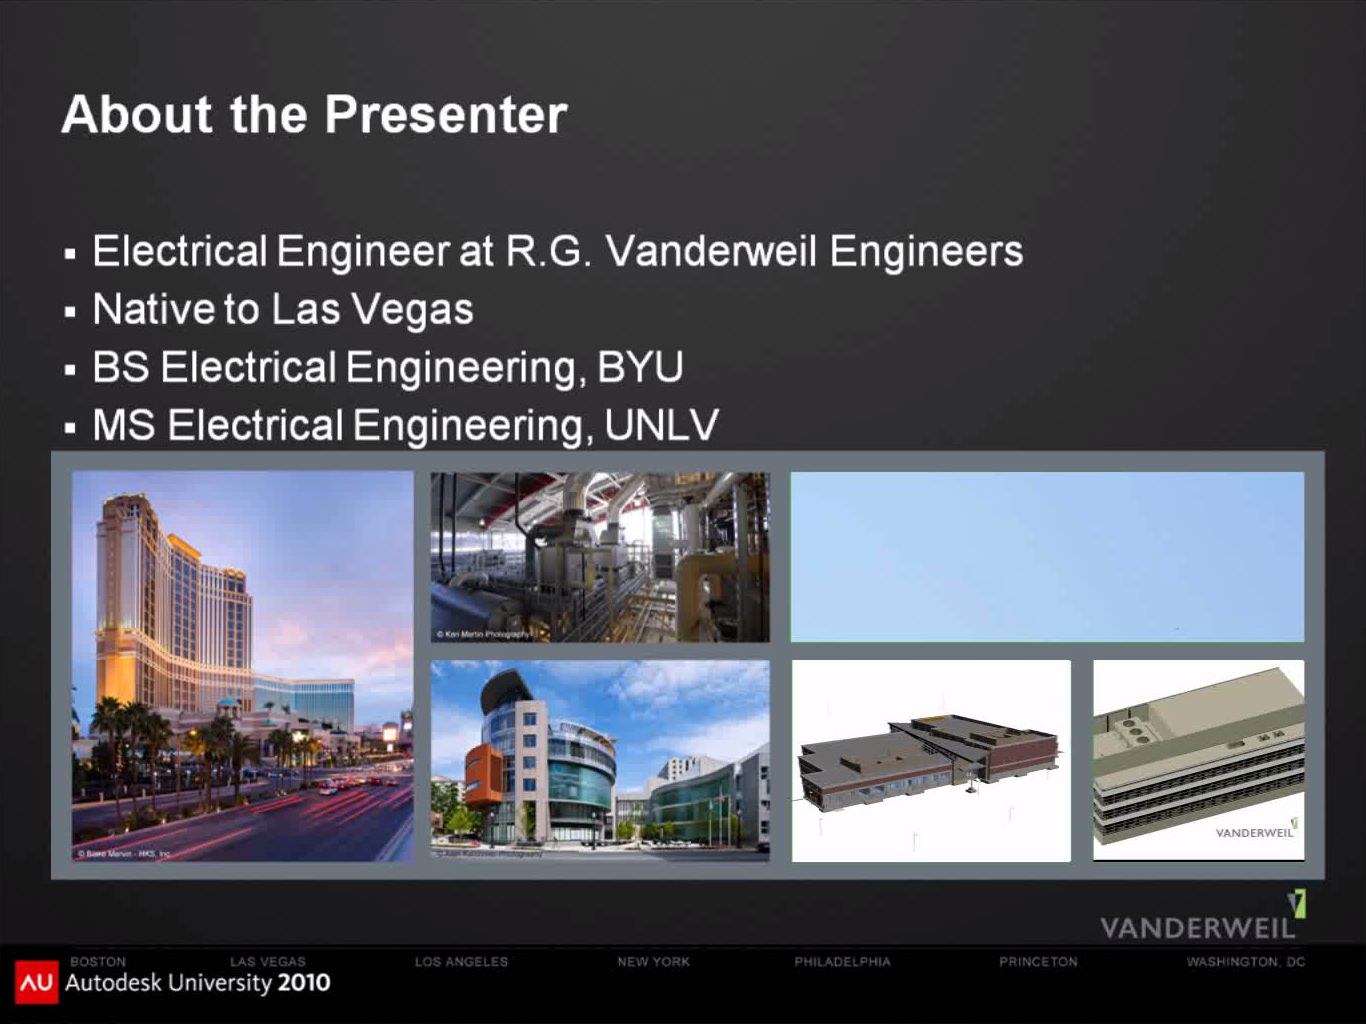 R.G. Vanderweil Engineers